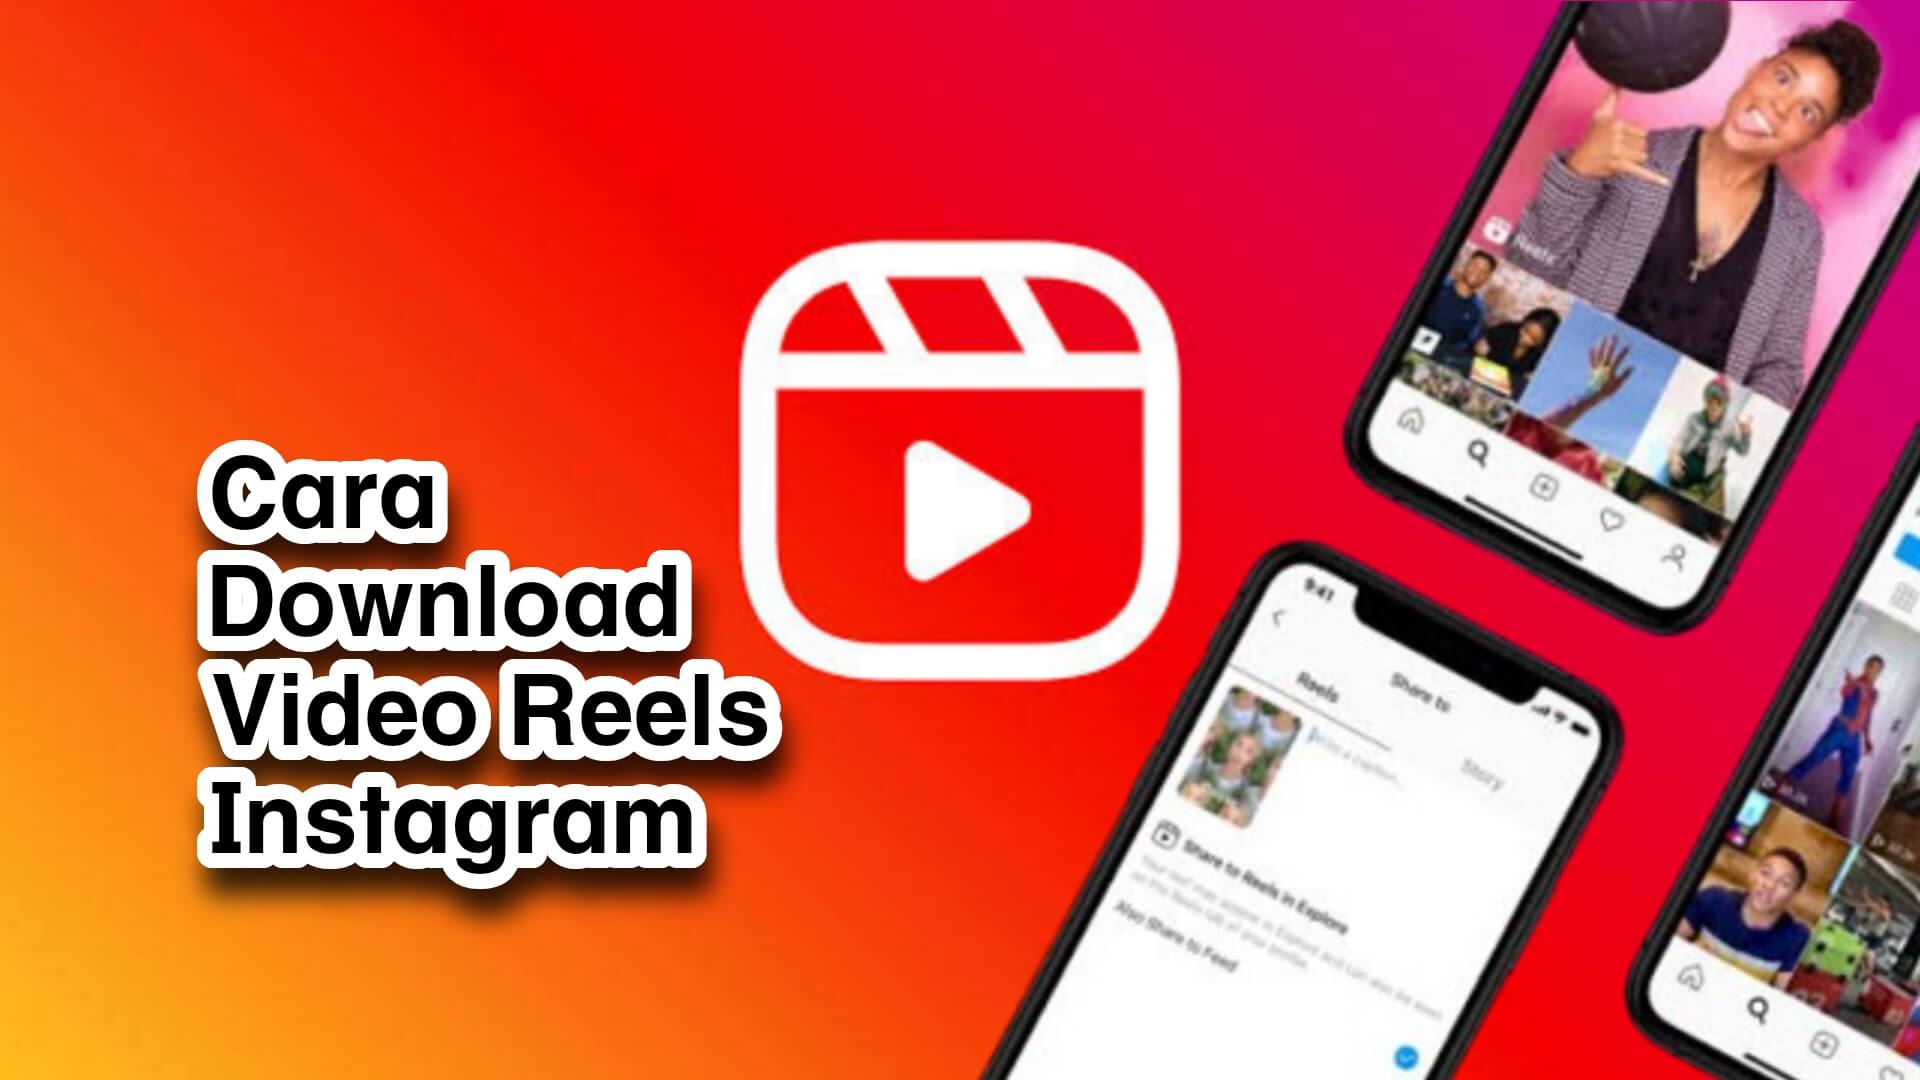 Cara Menyimpan Video Reels Instagram ke Galeri dengan Musik